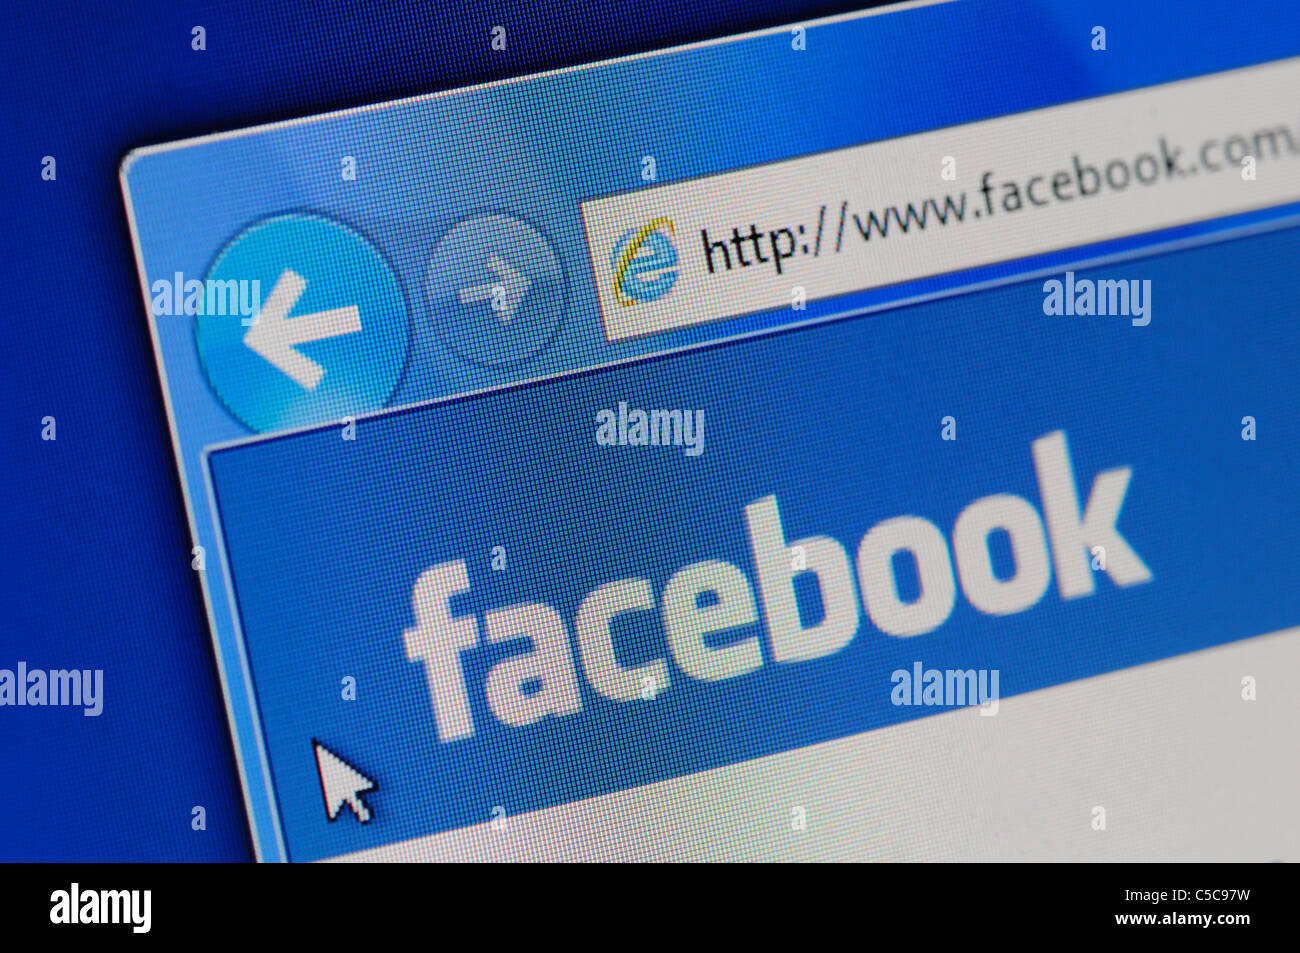 Le site internet Facebook dans le navigateur Internet Explorer ; montrant sa page d'accueil logo affiché sur un écran d'ordinateur portable. Banque D'Images